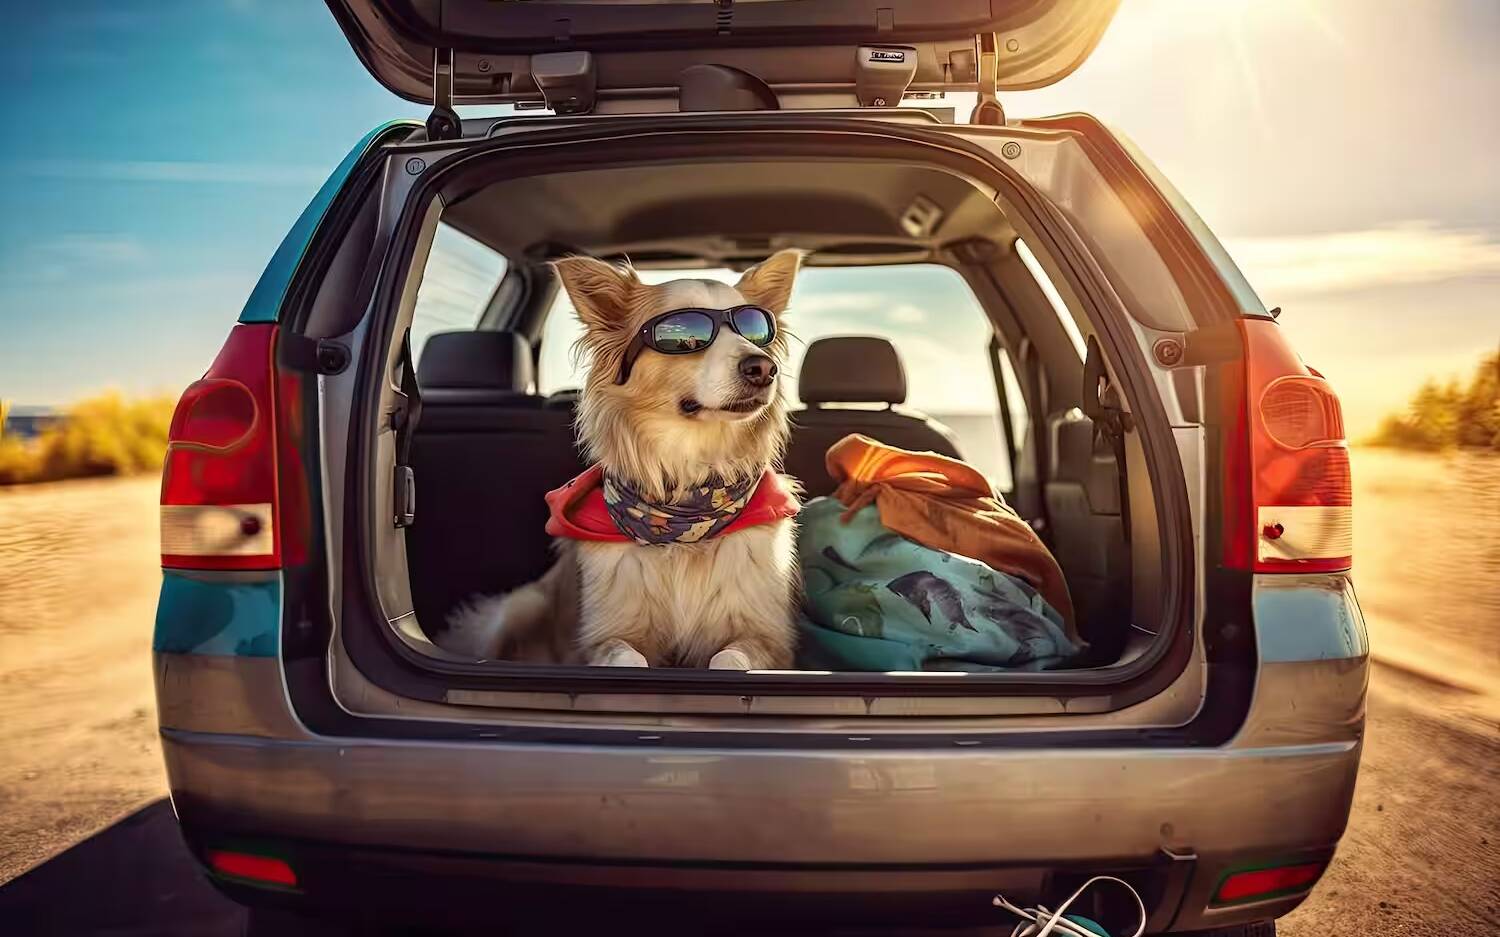 Votre chien dans une voiture au soleil, quelle température ? - Boutique Le  Jardin Des Animaux